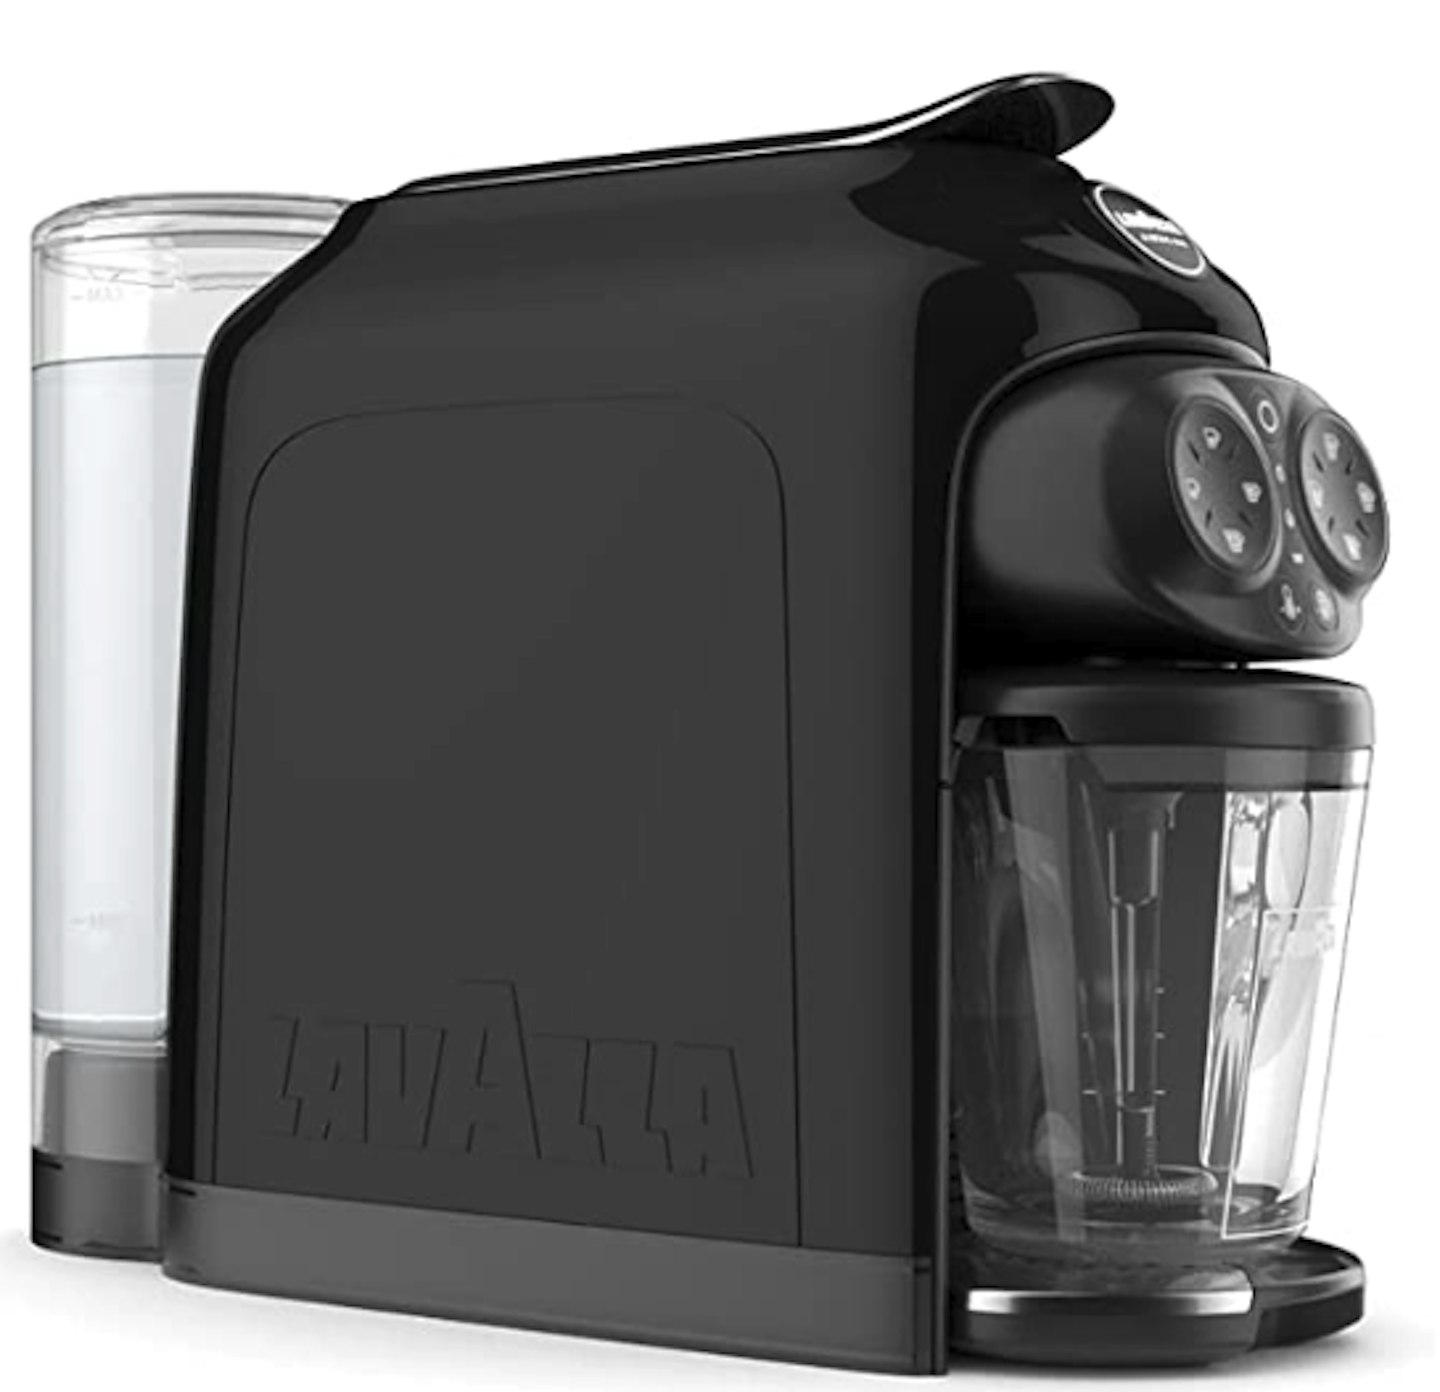 Lavazza Deséa Capsule Coffee Machine